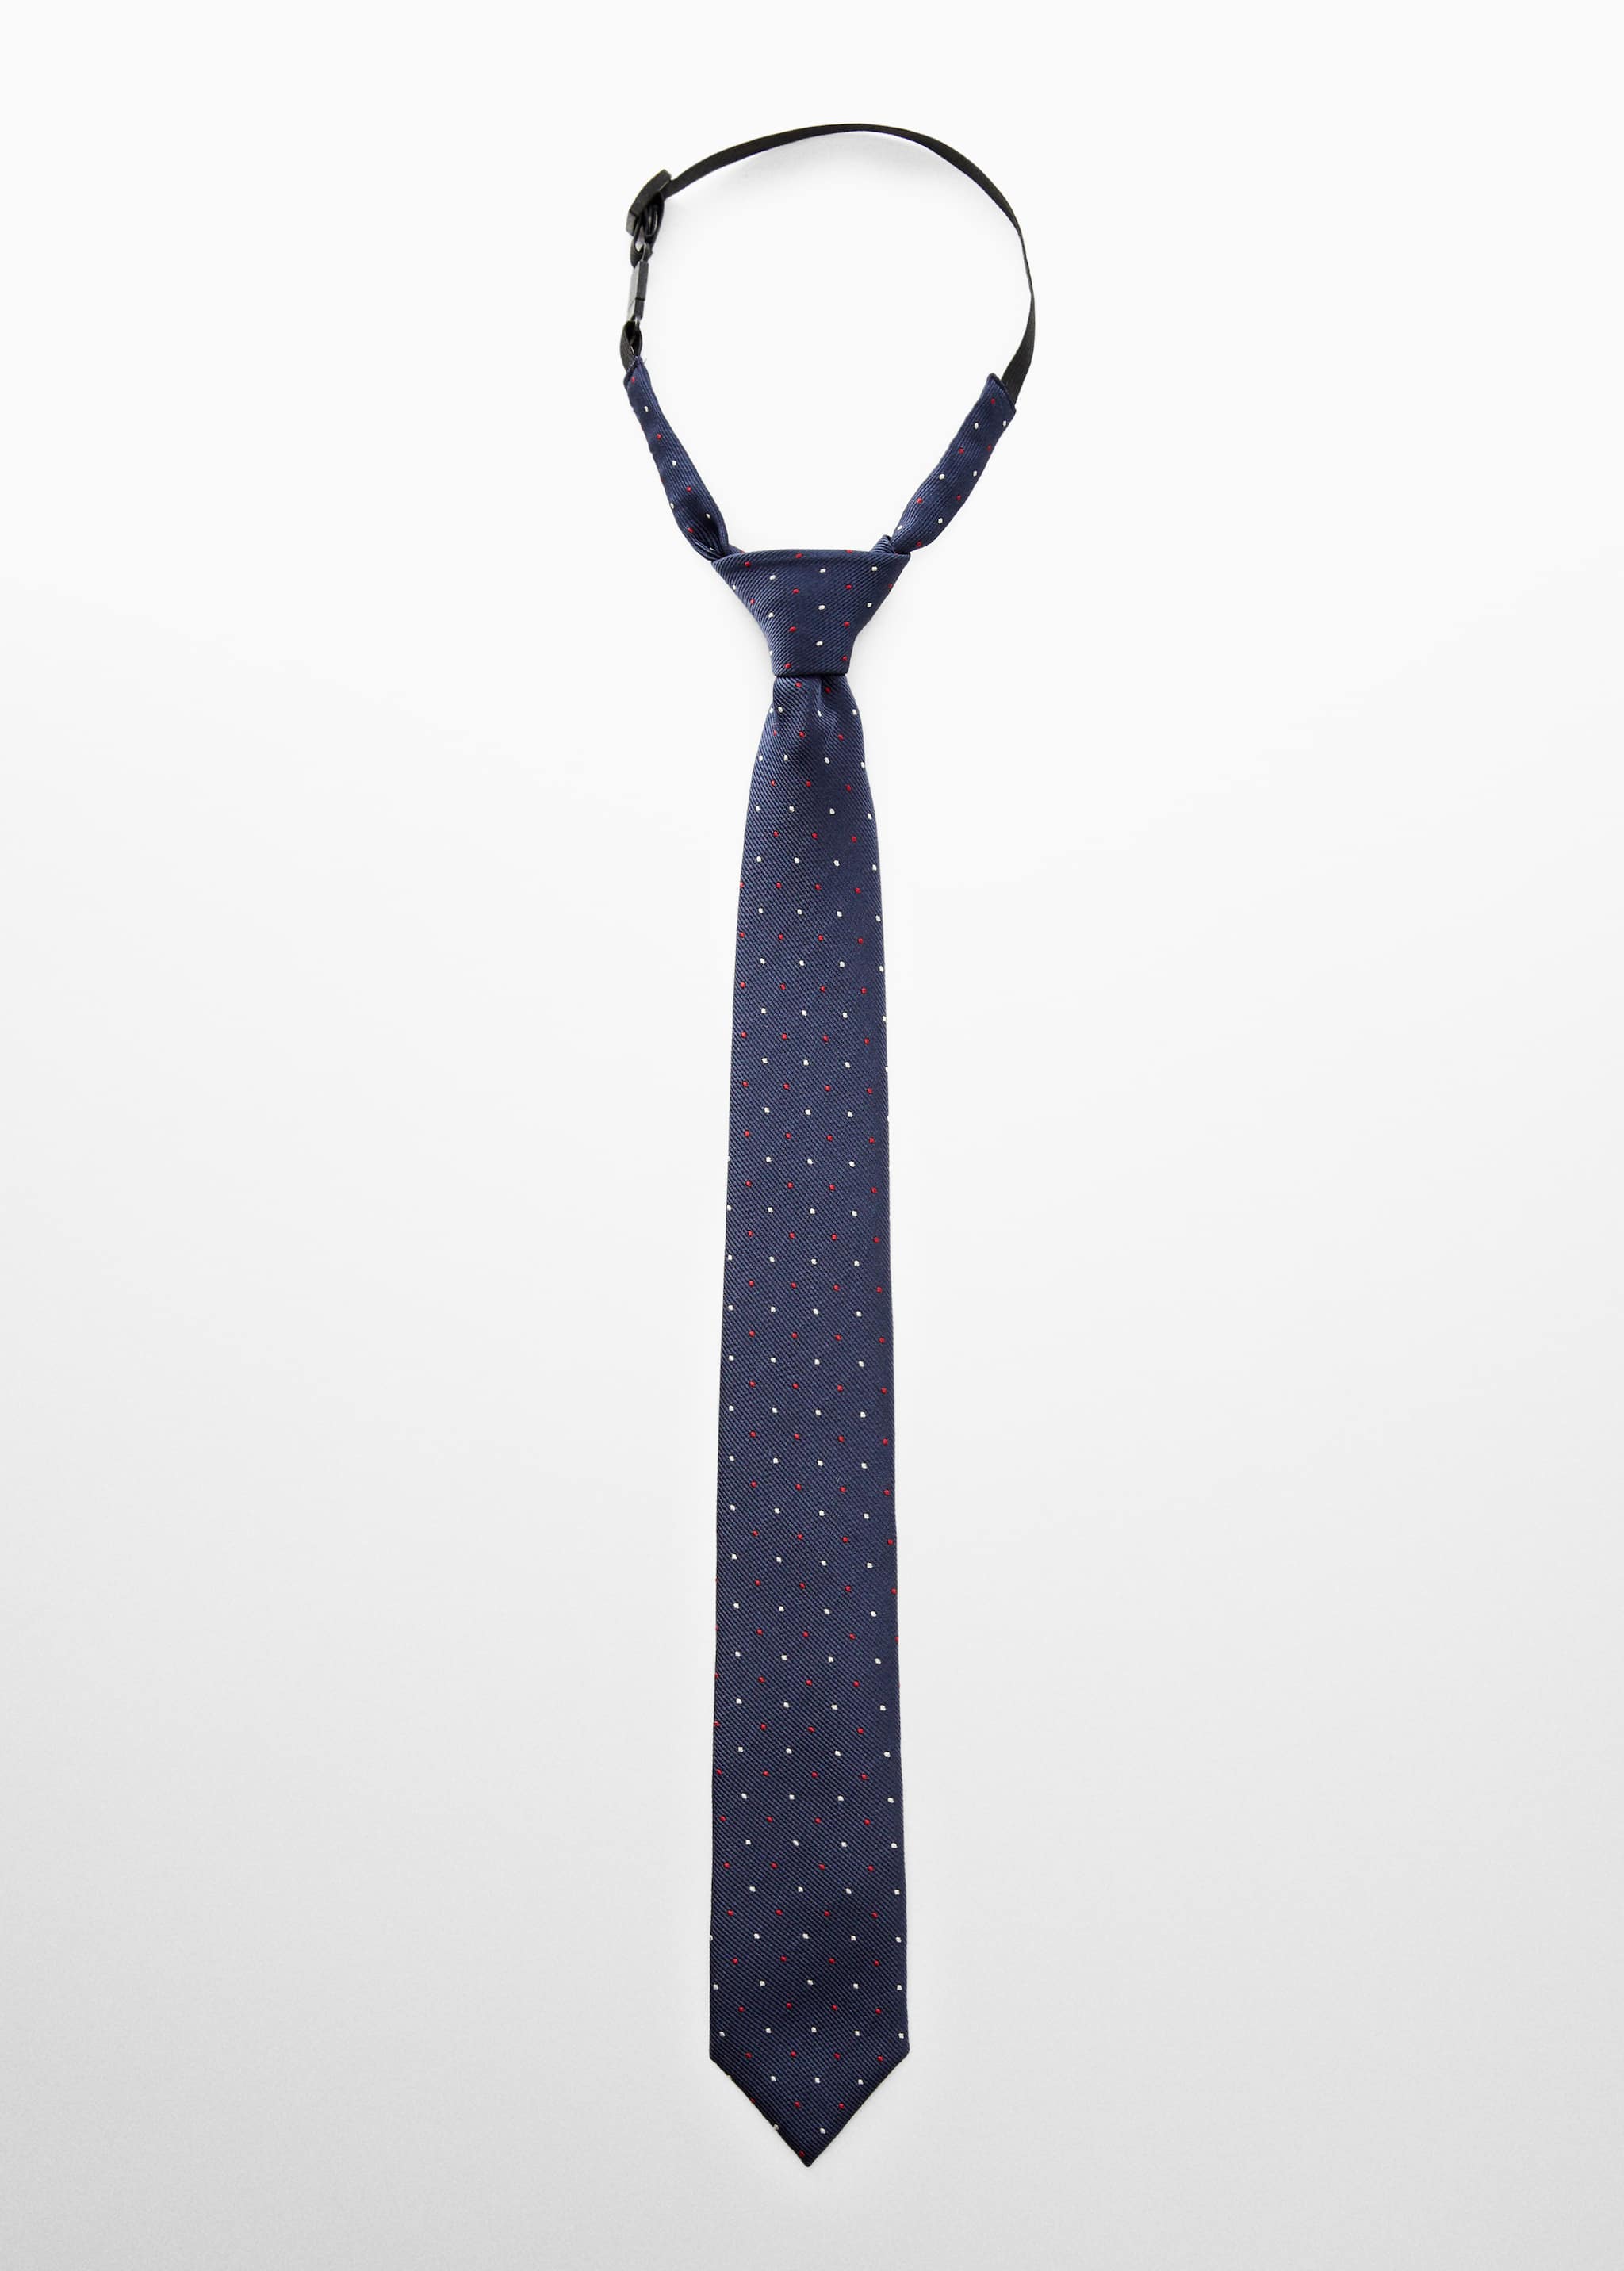 Cravate à pois - Article sans modèle